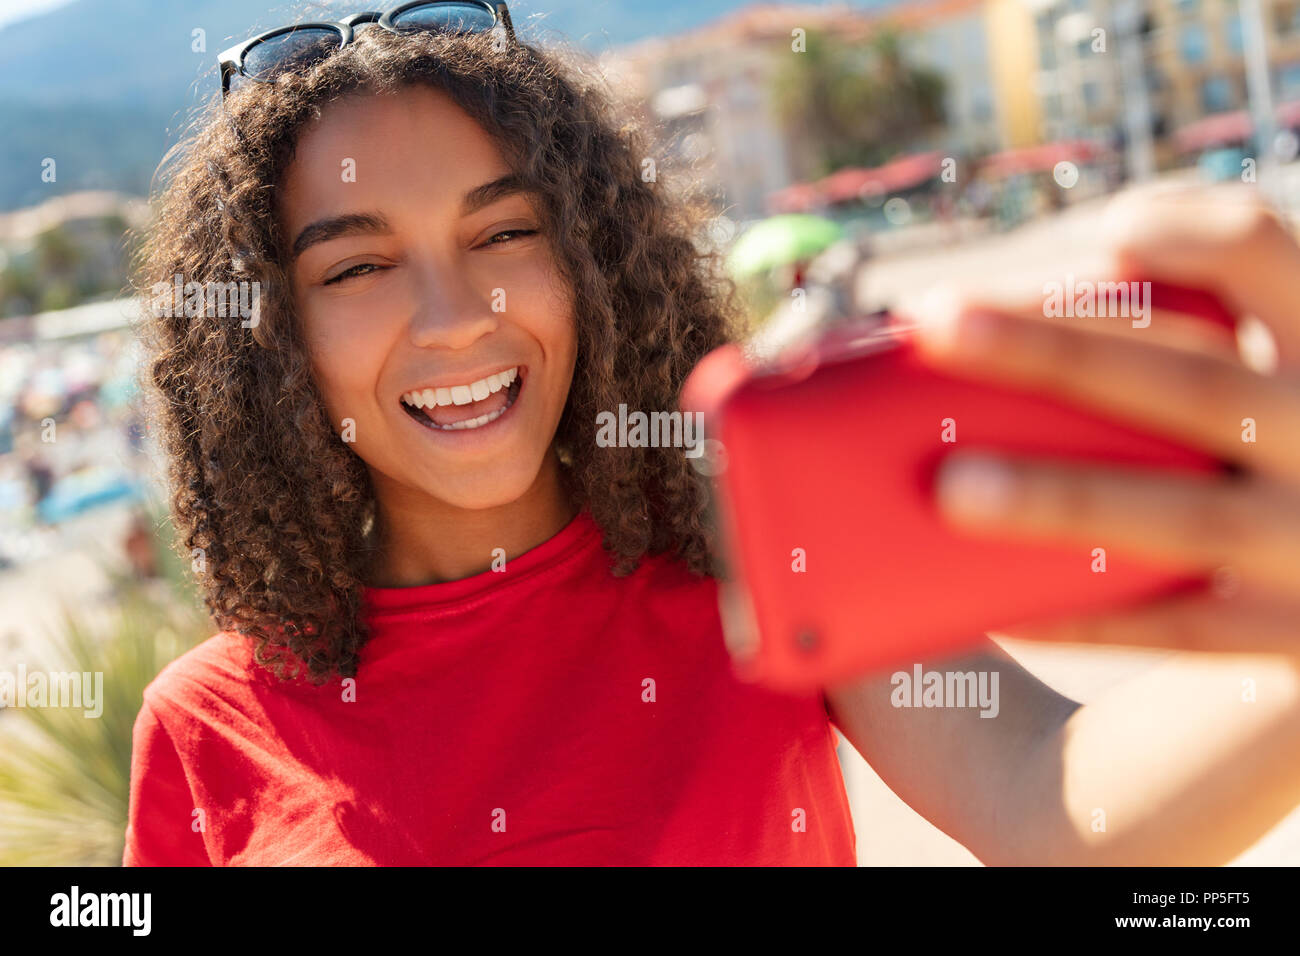 Schöne happy gemischten Rasse Afrikanische Amerikanische junge frau mädchen Teenager weibliches Kind lächelnd mit perfekte Zähne unter selfie Foto mit roten Zelle p Stockfoto